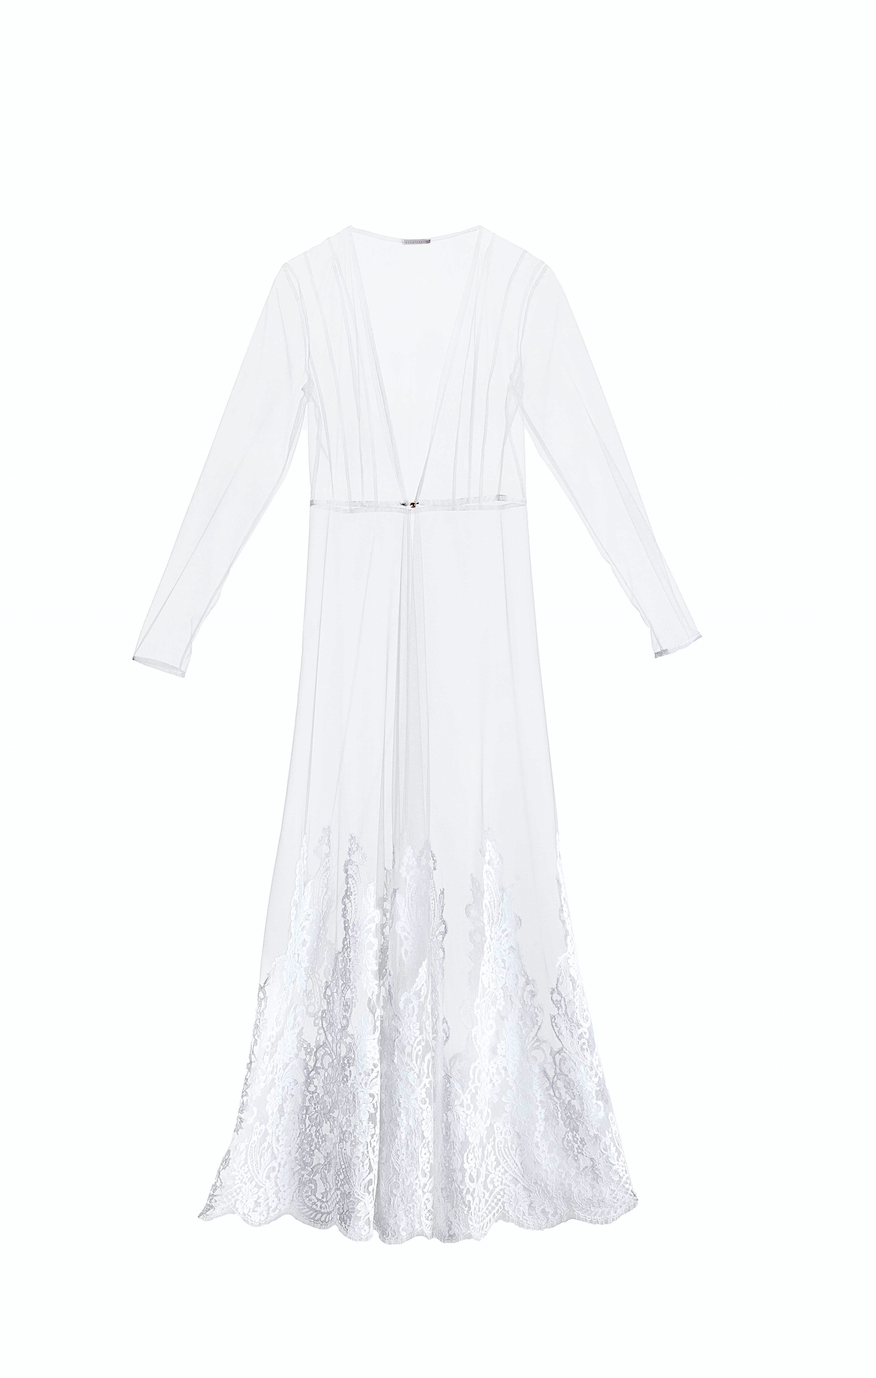 Matrimonio All’Italiana White Tulle Robe